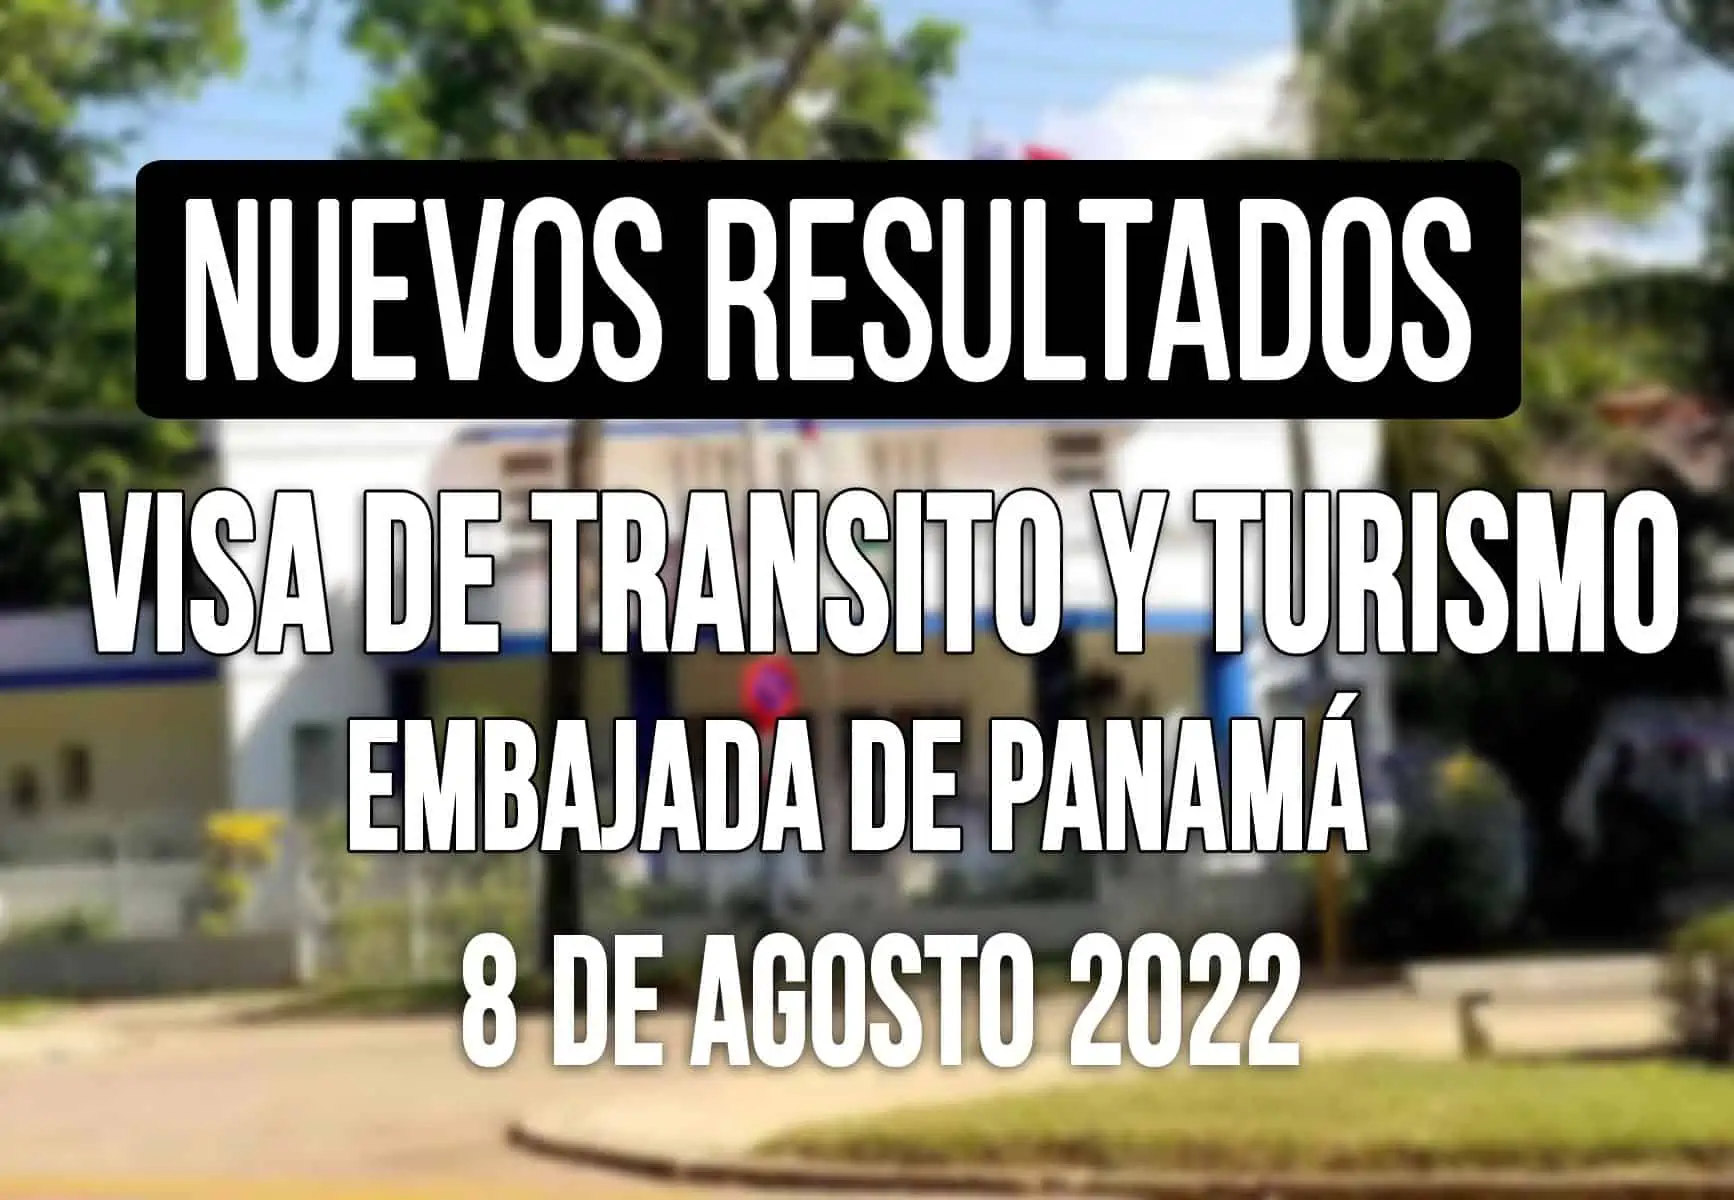 Embajada de Panamá informa sobre Visas de Tránsito y Turismo 8 de Agosto 2022